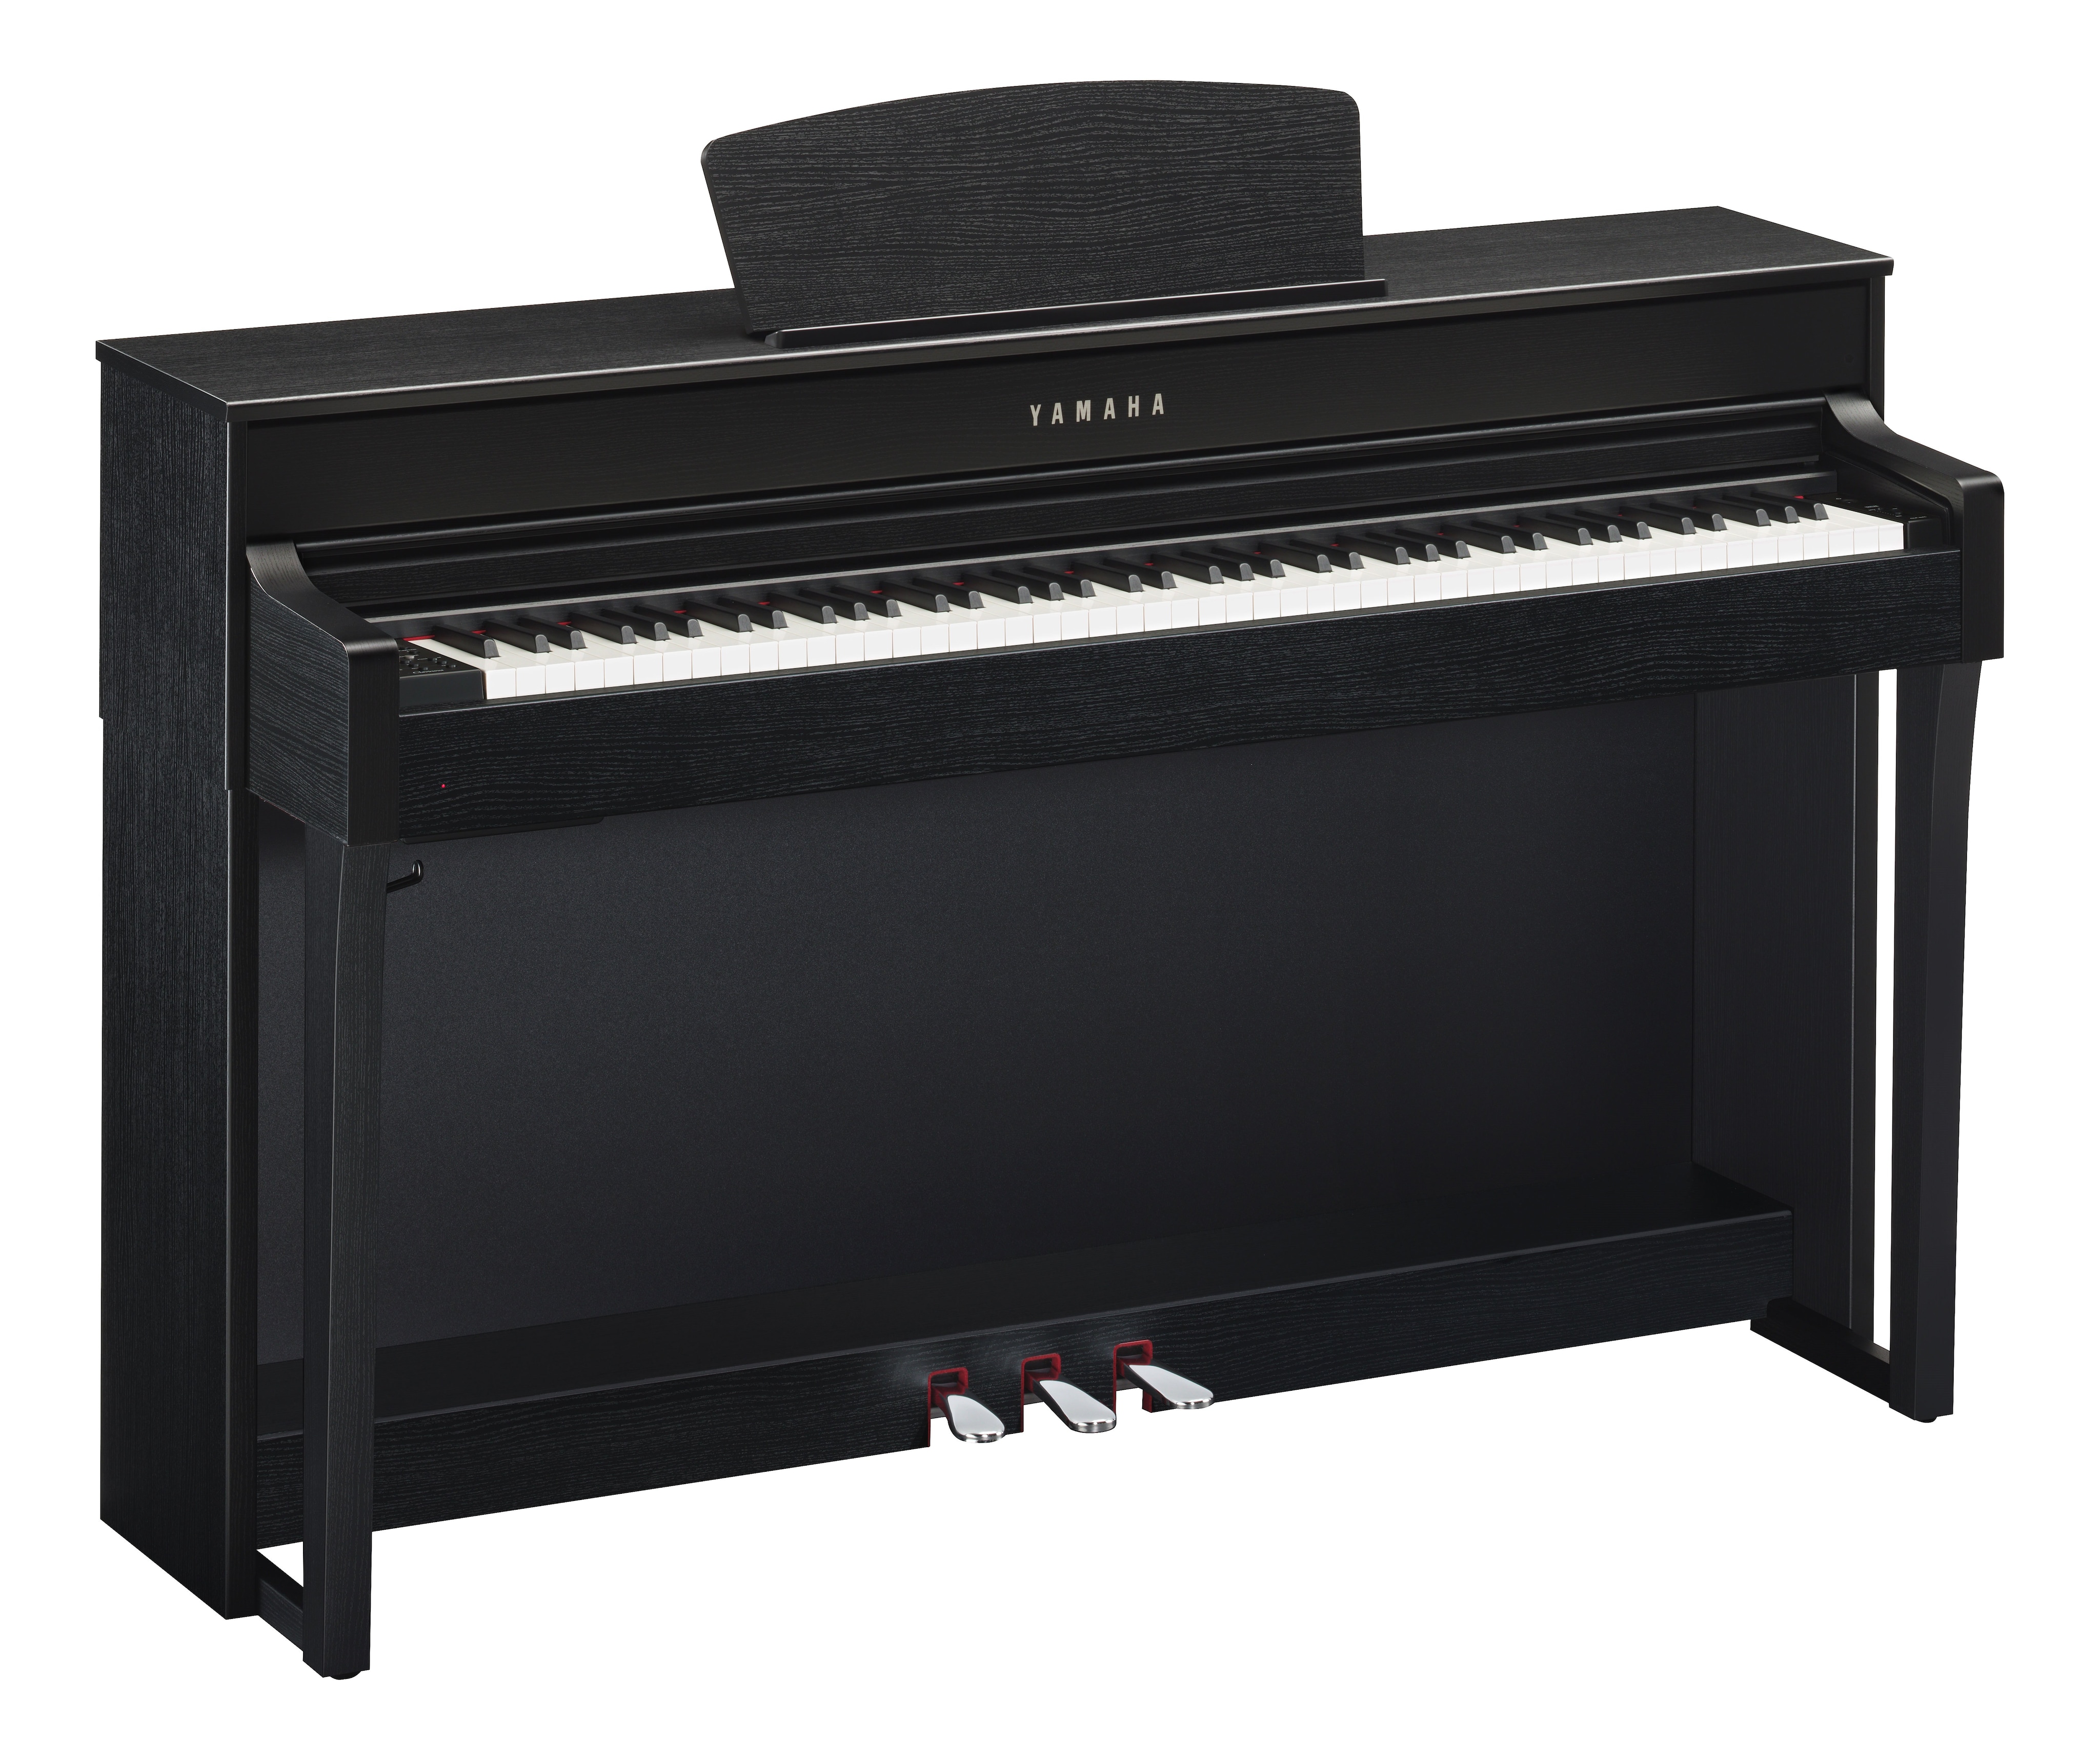 【期間限定お試し価格】 電子ピアノ CLP-635R ヤマハ YAMAHA 2018年製 音楽 楽器 鍵盤楽器